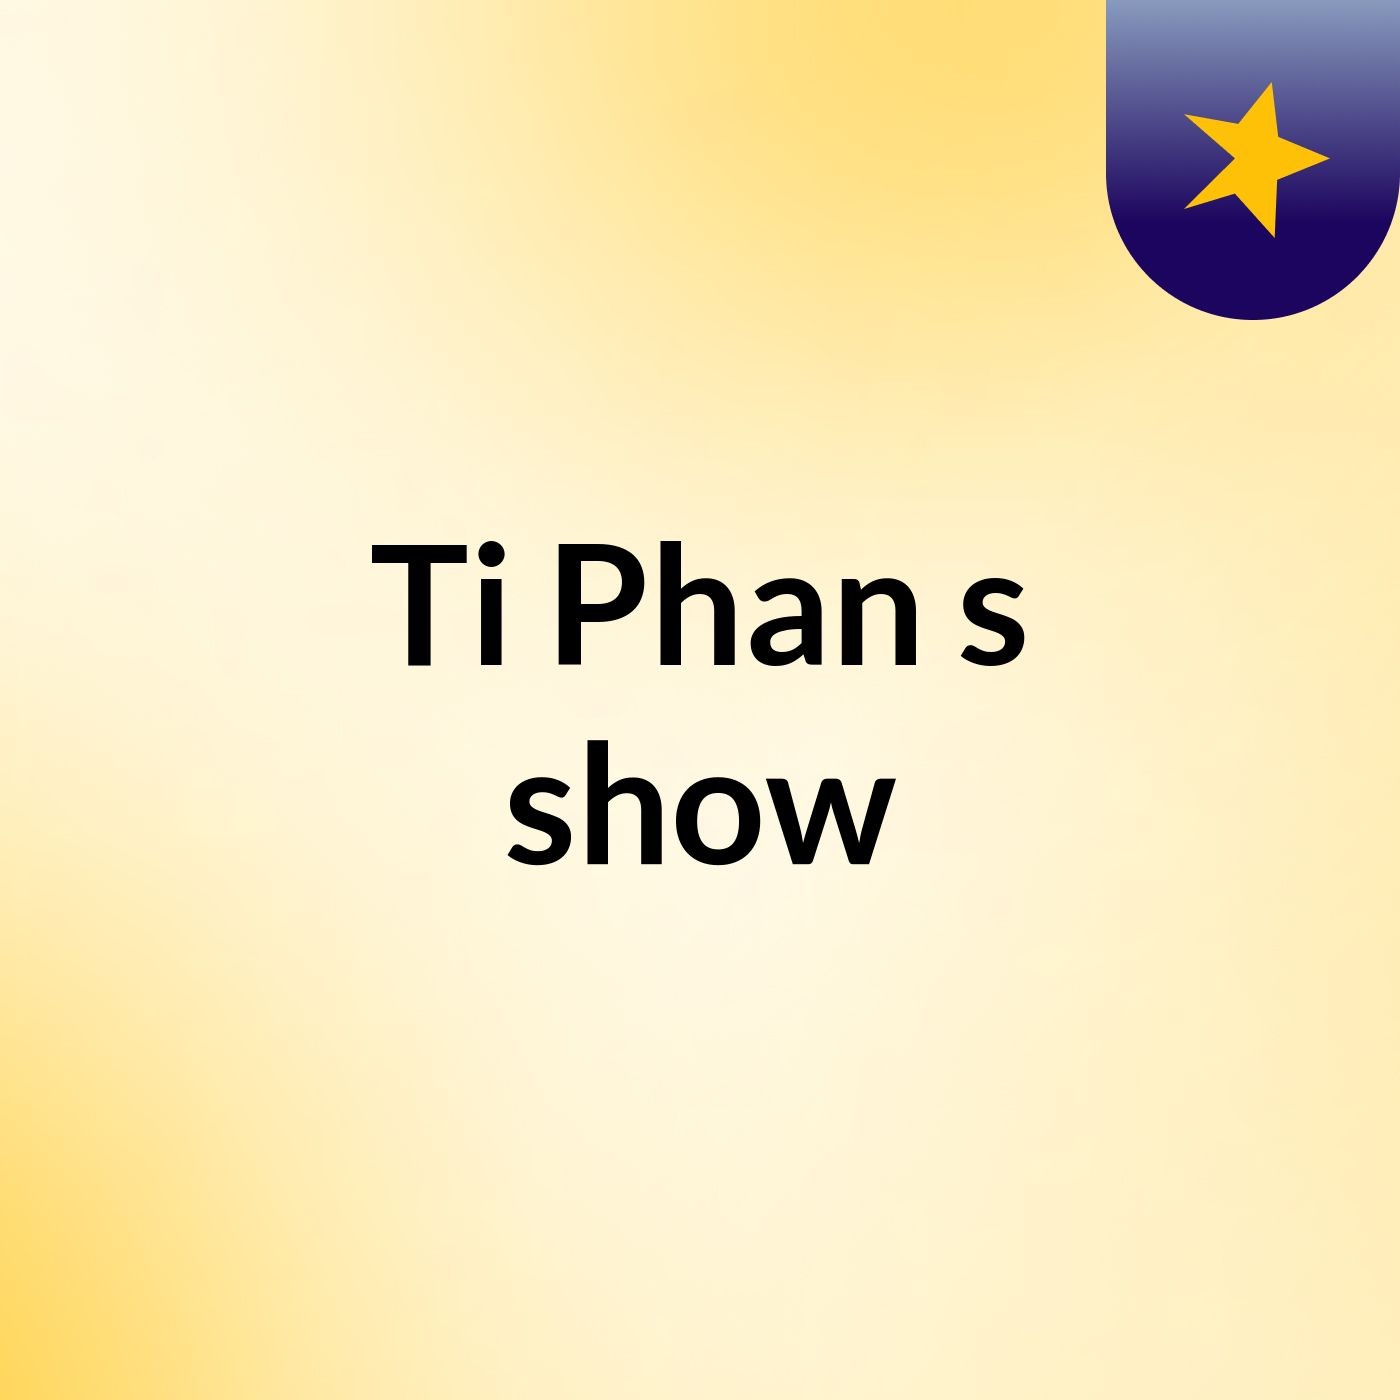 Ti Phan's show